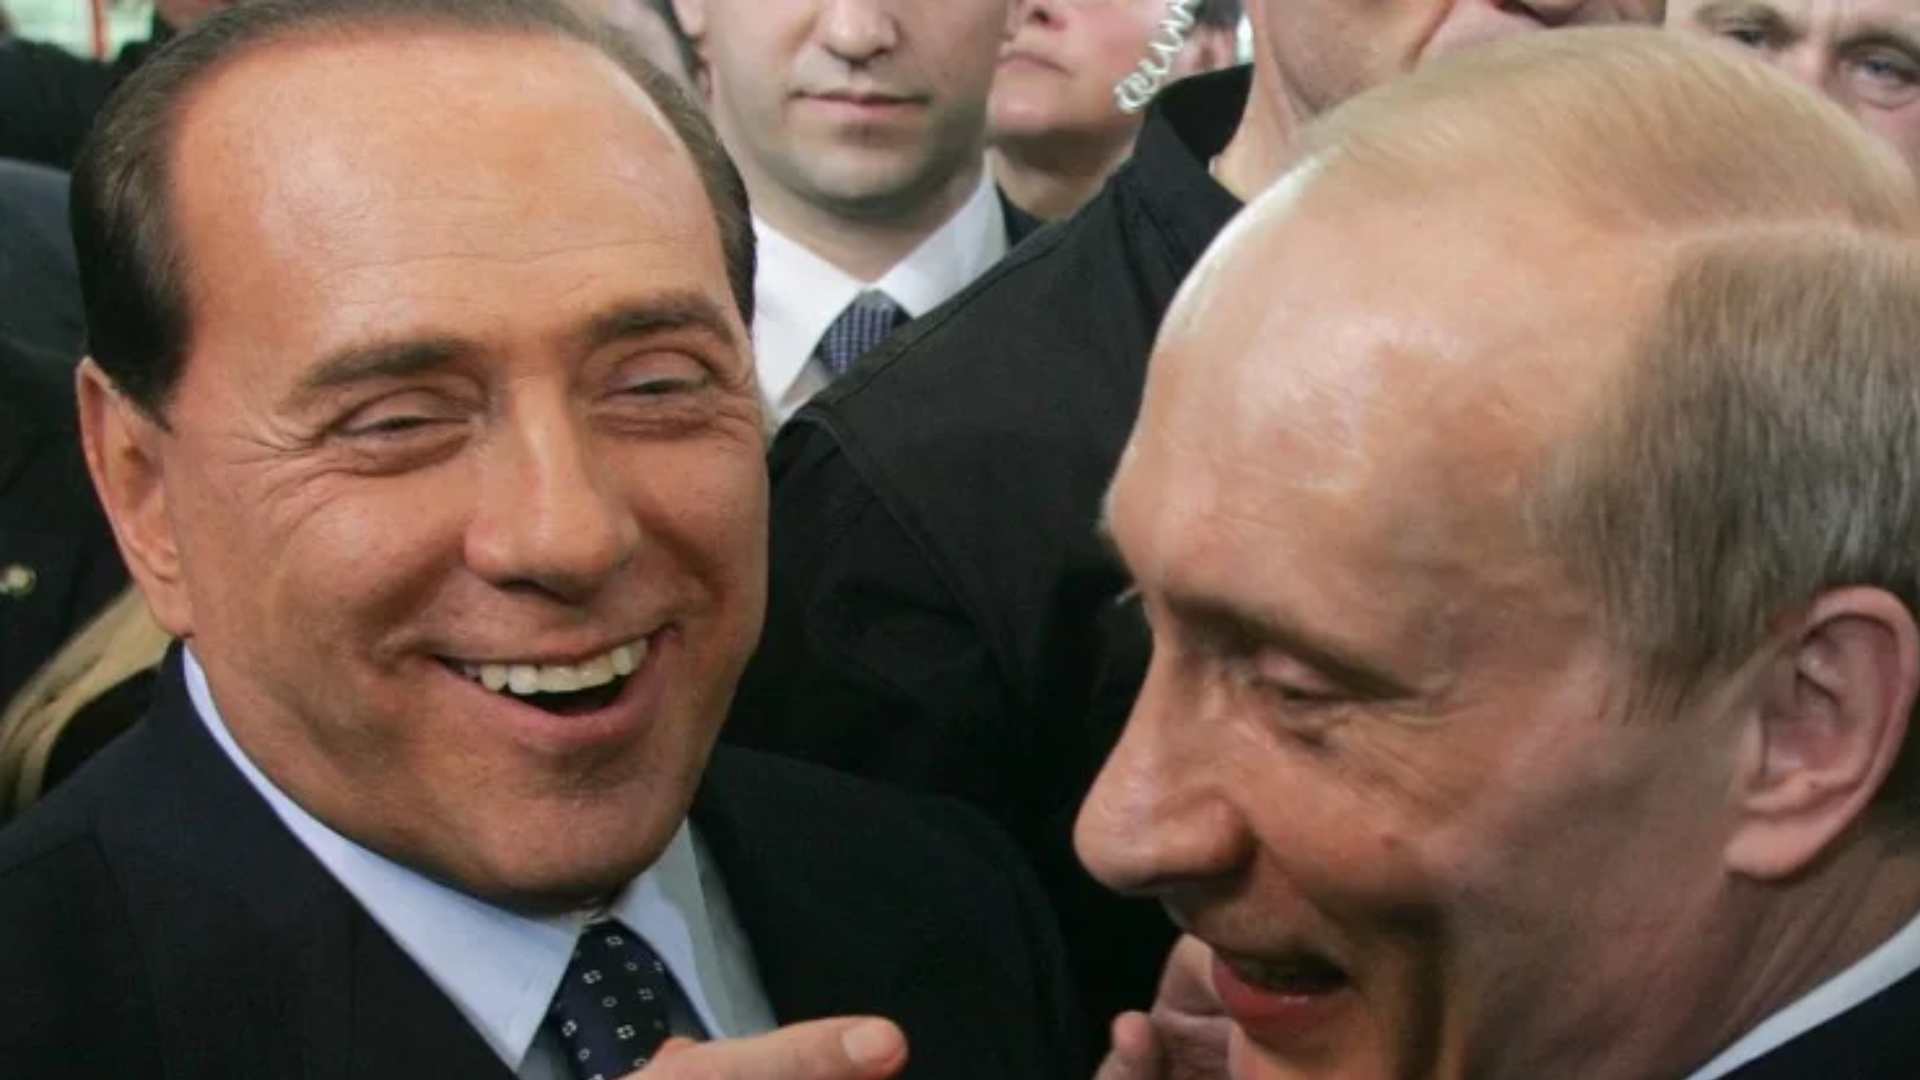 Em áudio vazado, Berlusconi afirma ter trocado ‘cartas amáveis’ com Putin